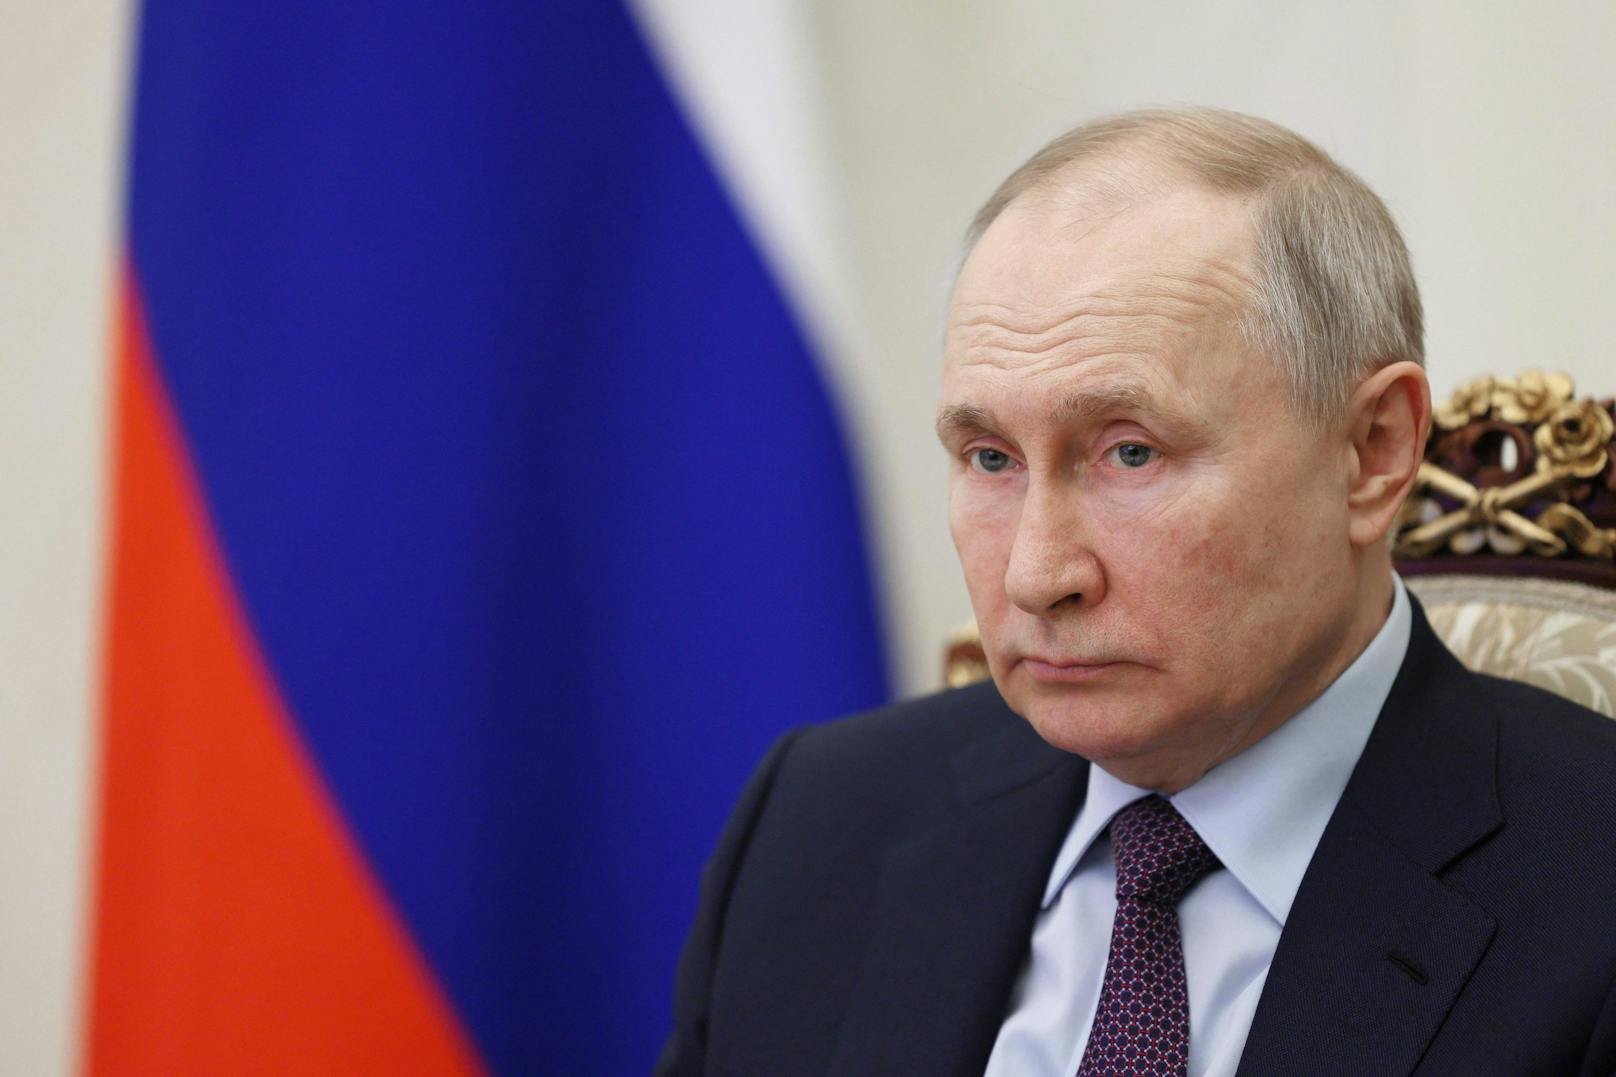 Putin-Besuch – Südafrika droht plötzlich mit Verhaftung